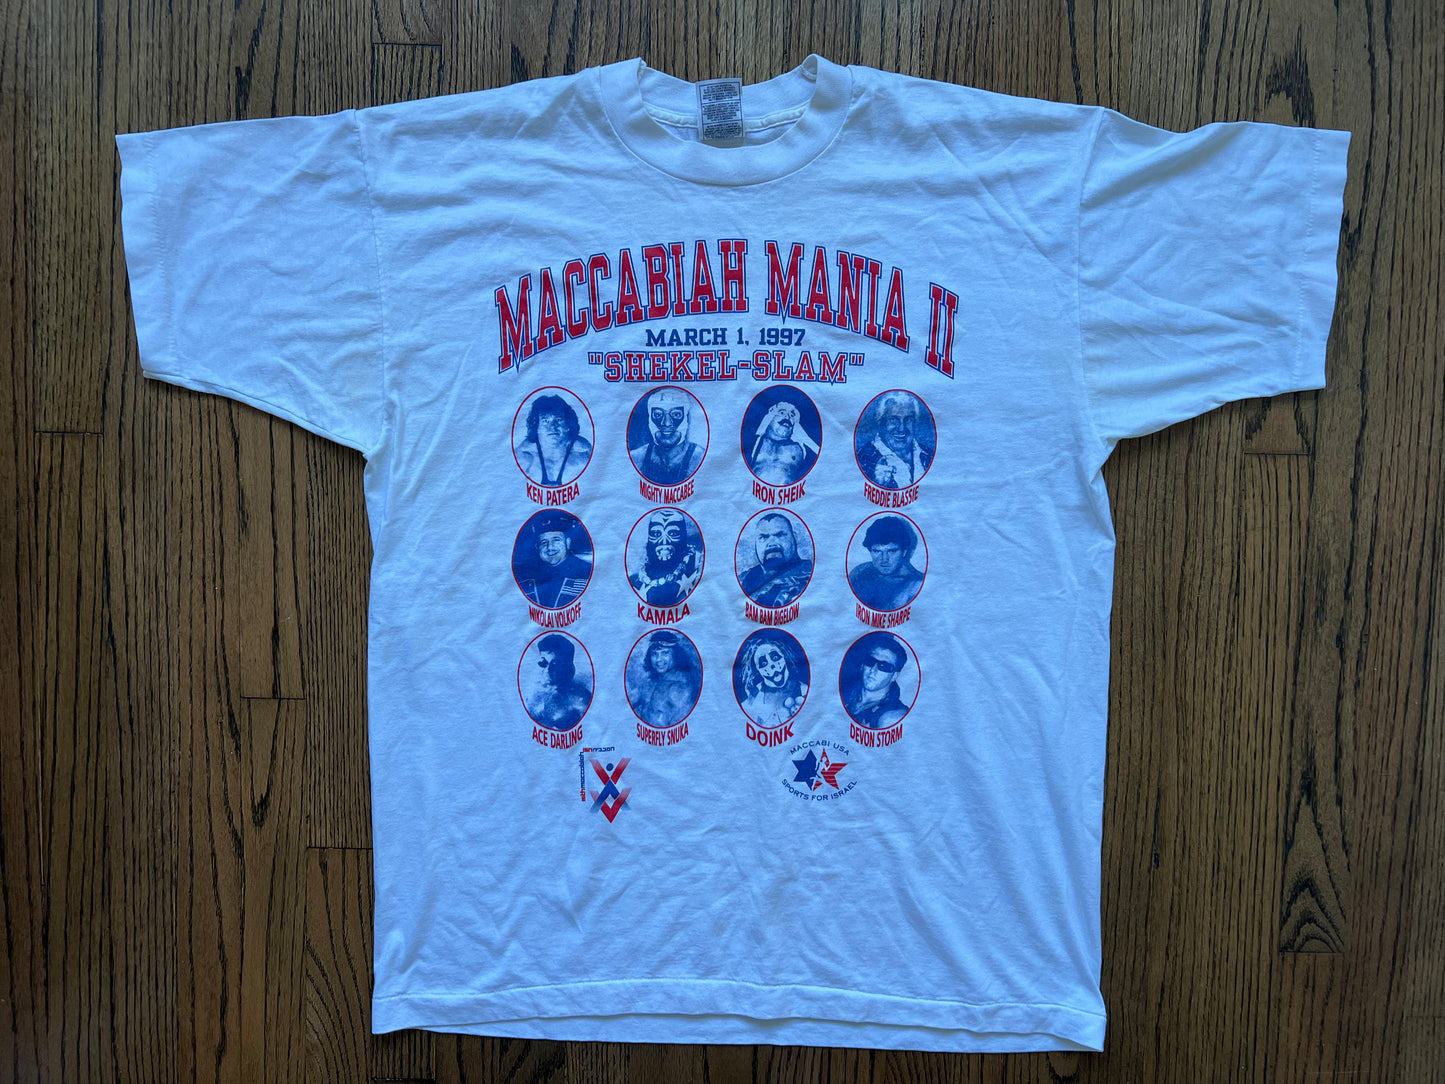 1997 Maccabiah mania shirt